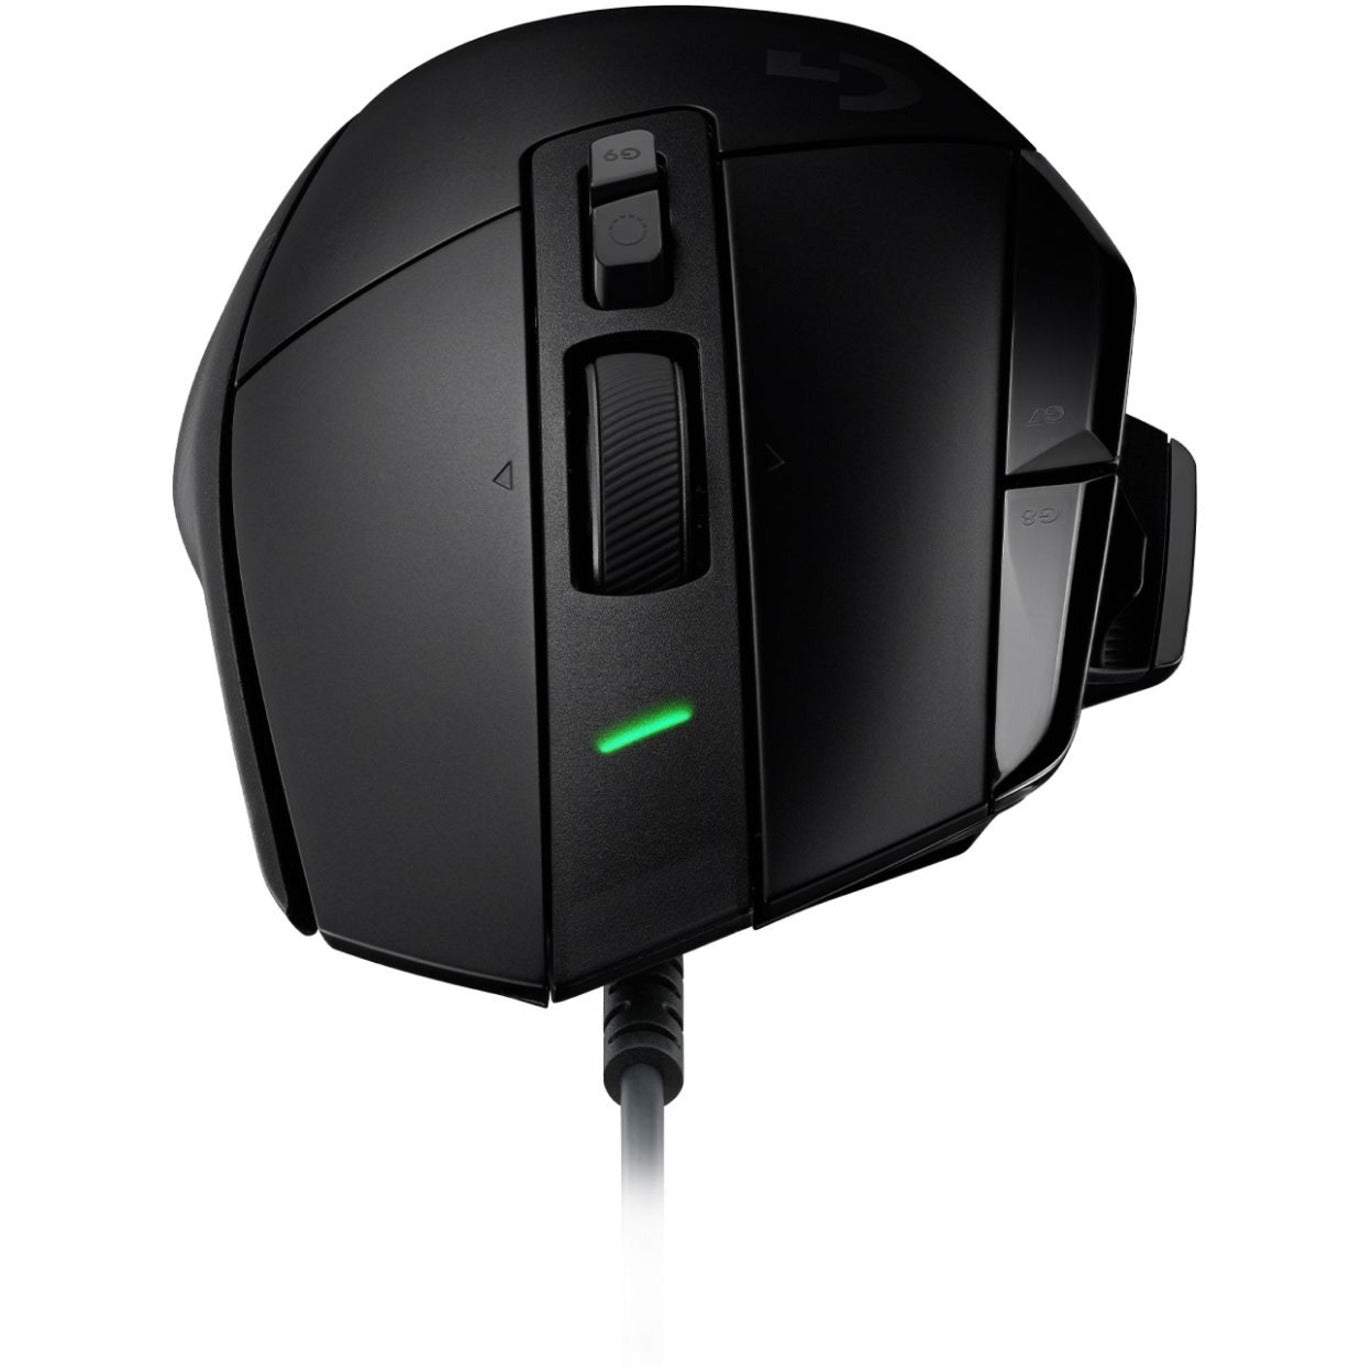 Logitech G 910-006136 G502 X Gaming Mouse Hohe Präzision Optischer Sensor 25600 DPI USB Verkabelt 2 Jahre Garantie